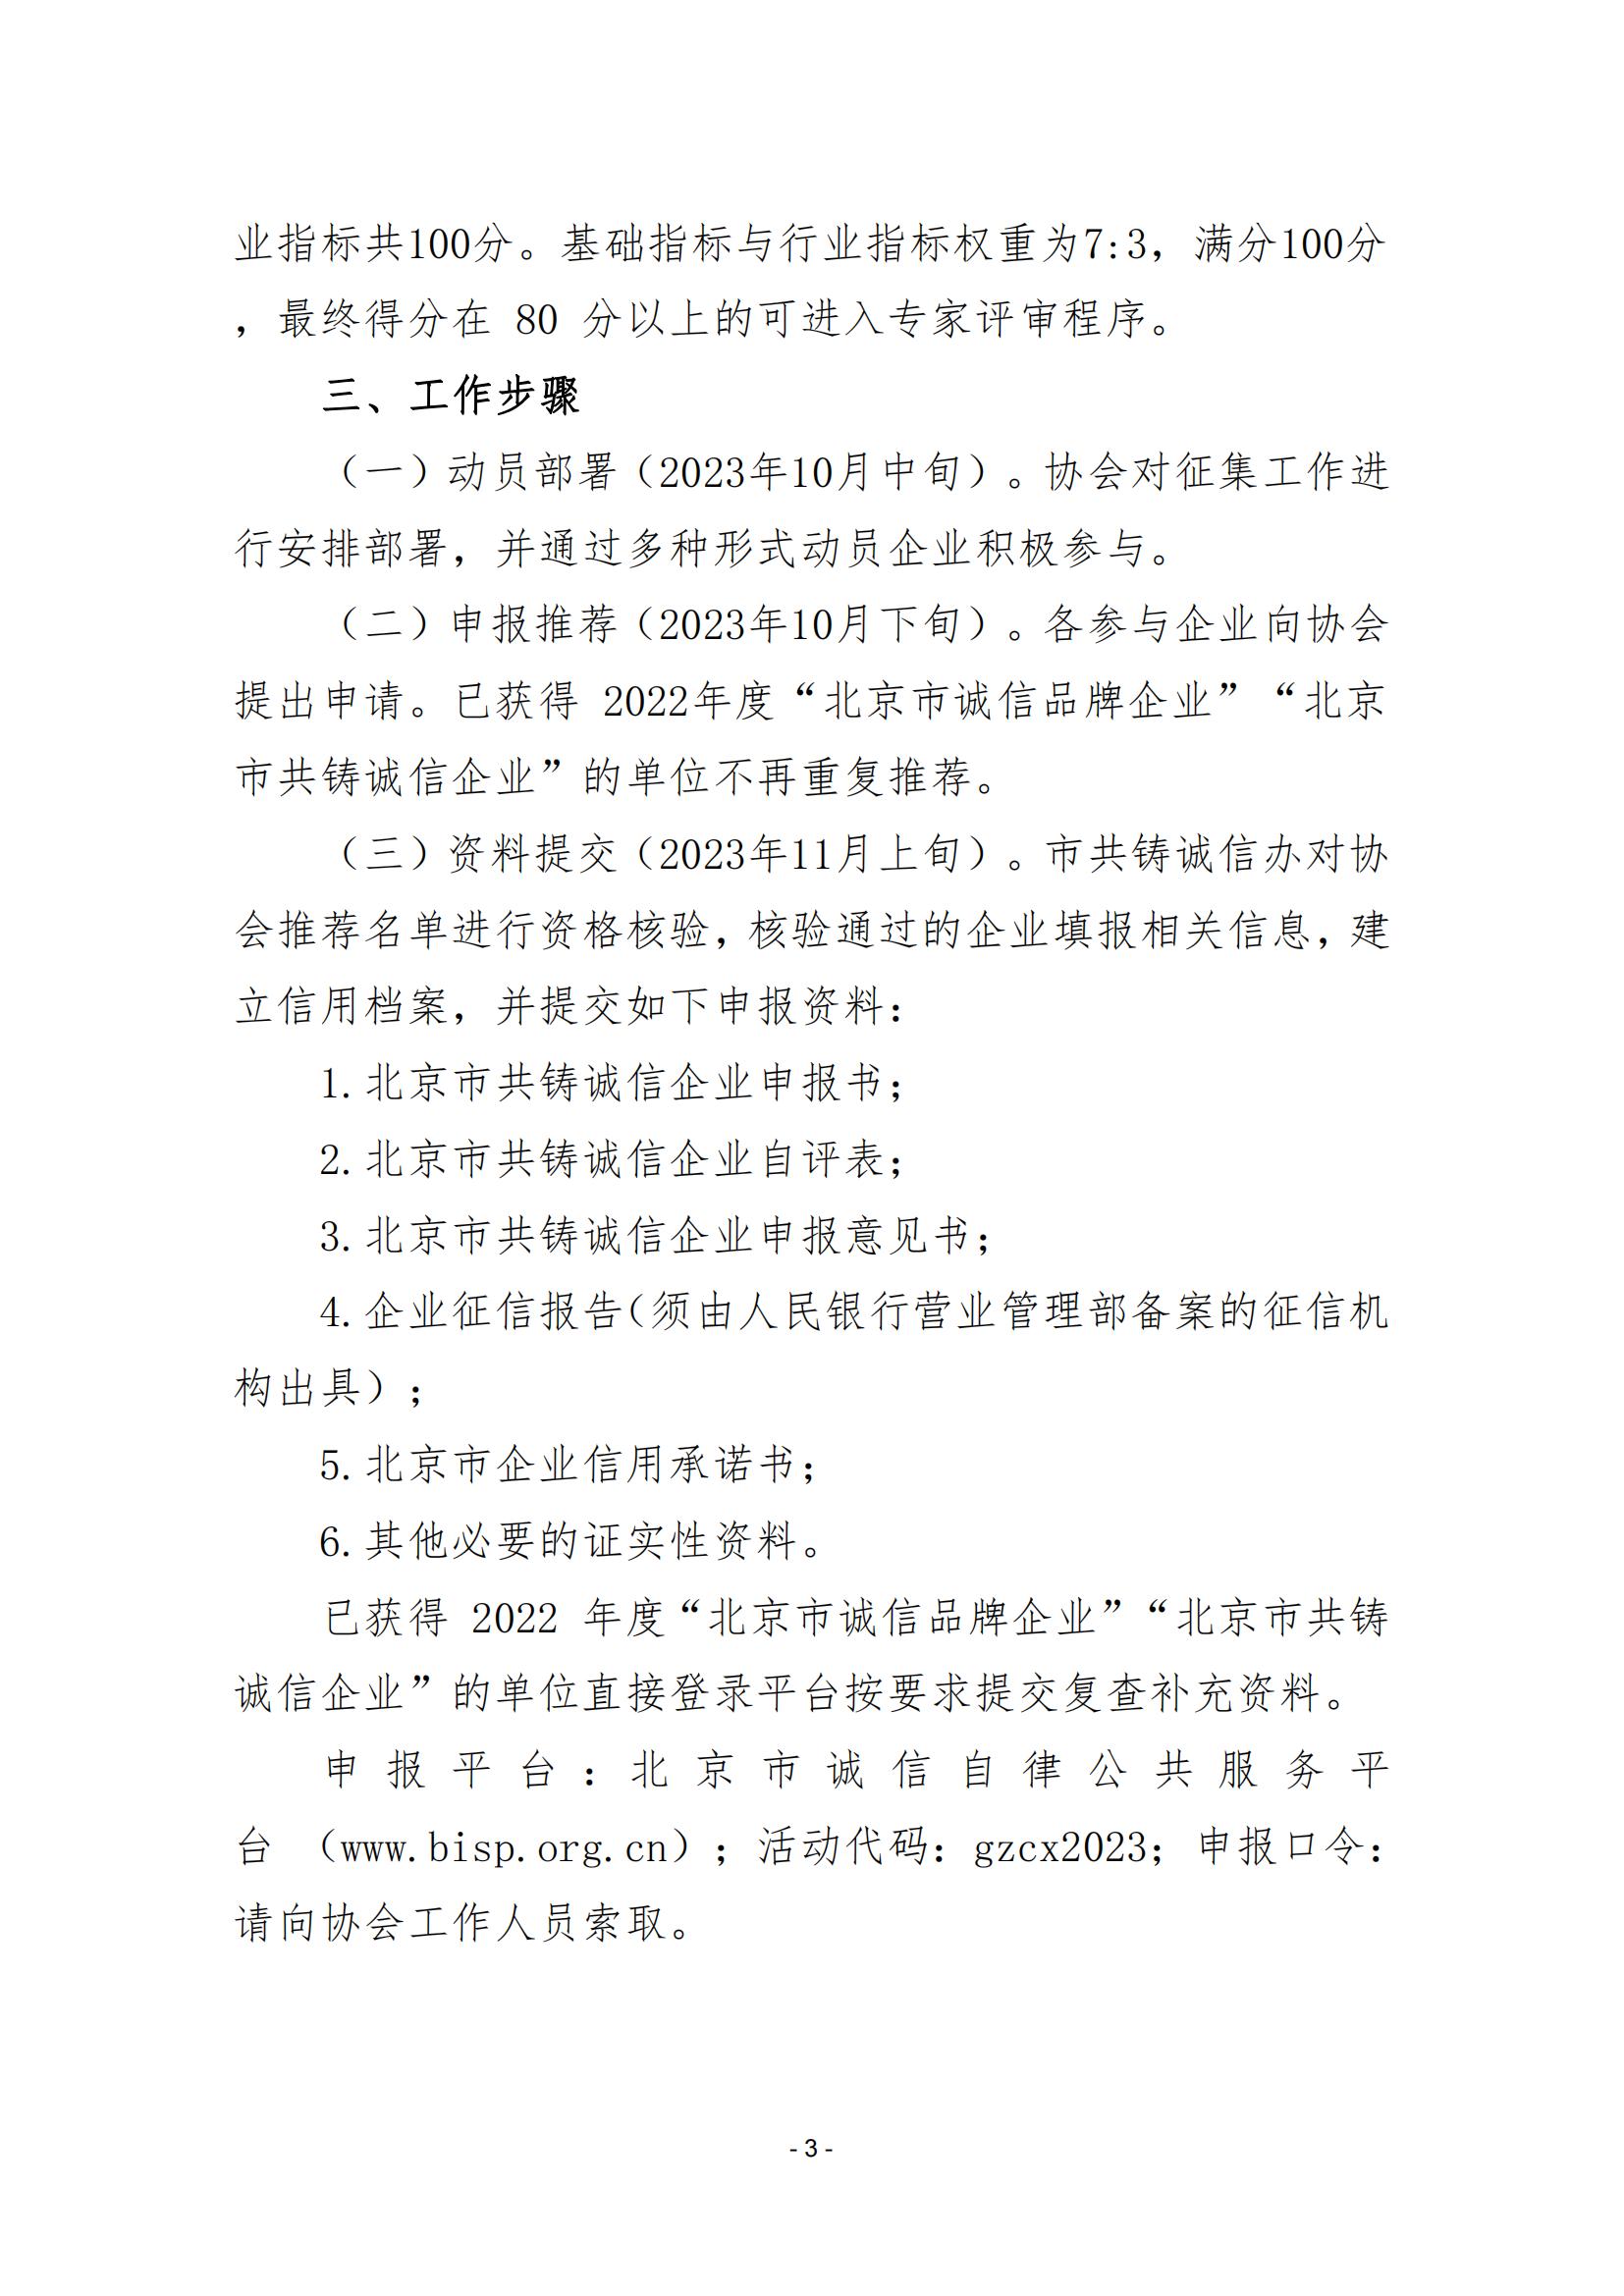 2023 年度“北京市共铸诚信企业”征集工作的通知（202324）_02.jpg